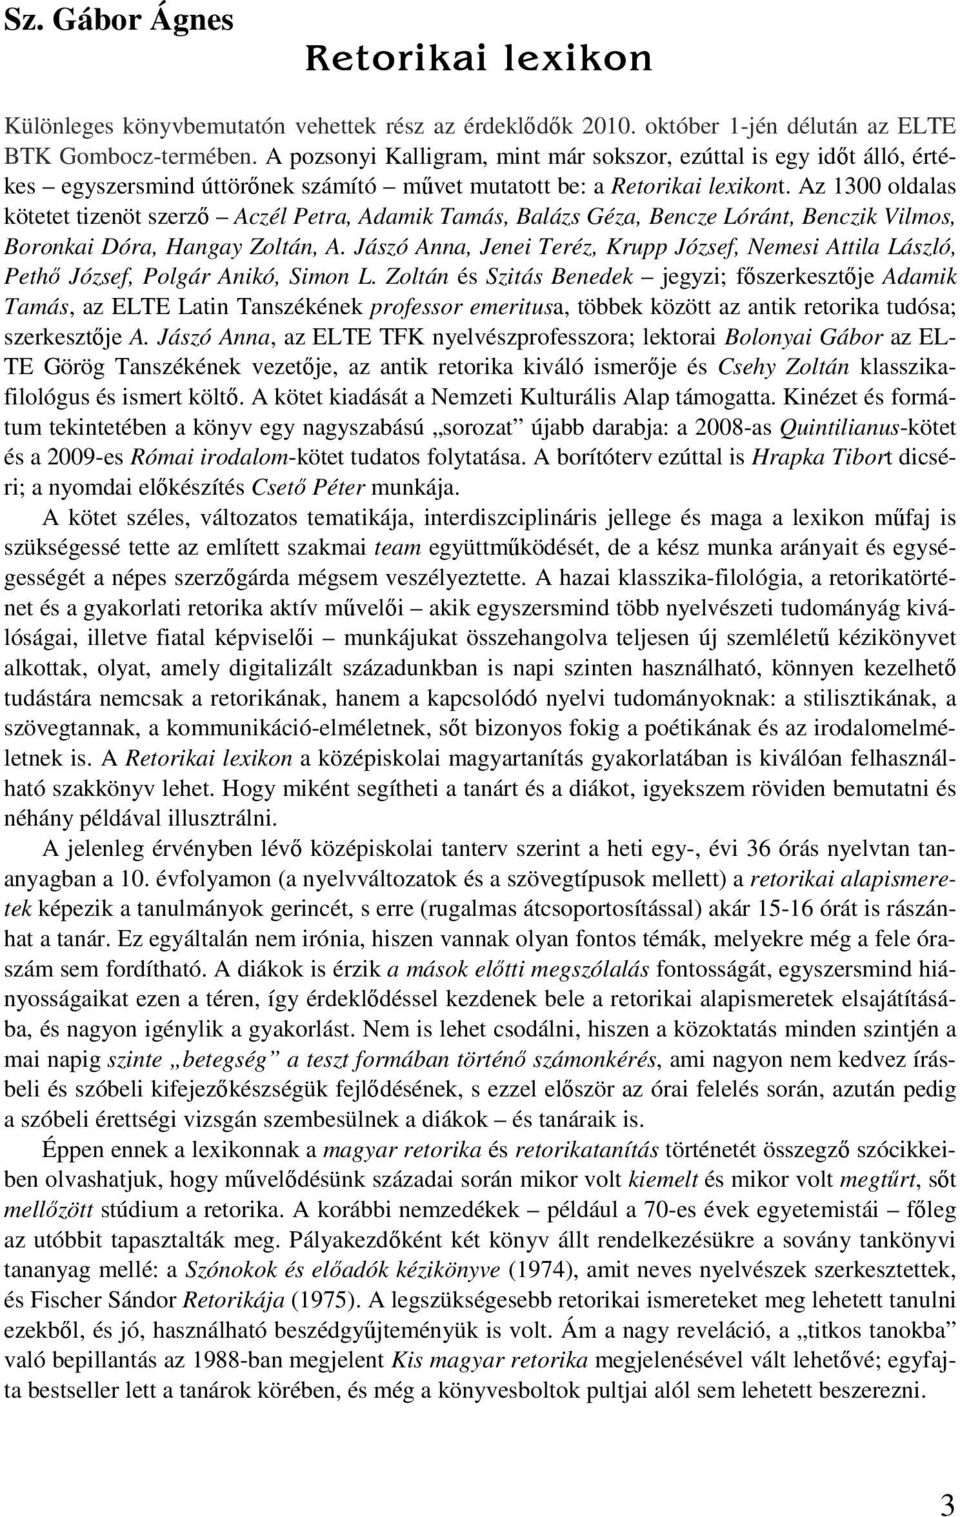 Az 1300 oldalas kötetet tizenöt szerző Aczél Petra, Adamik Tamás, Balázs Géza, Bencze Lóránt, Benczik Vilmos, Boronkai Dóra, Hangay Zoltán, A.